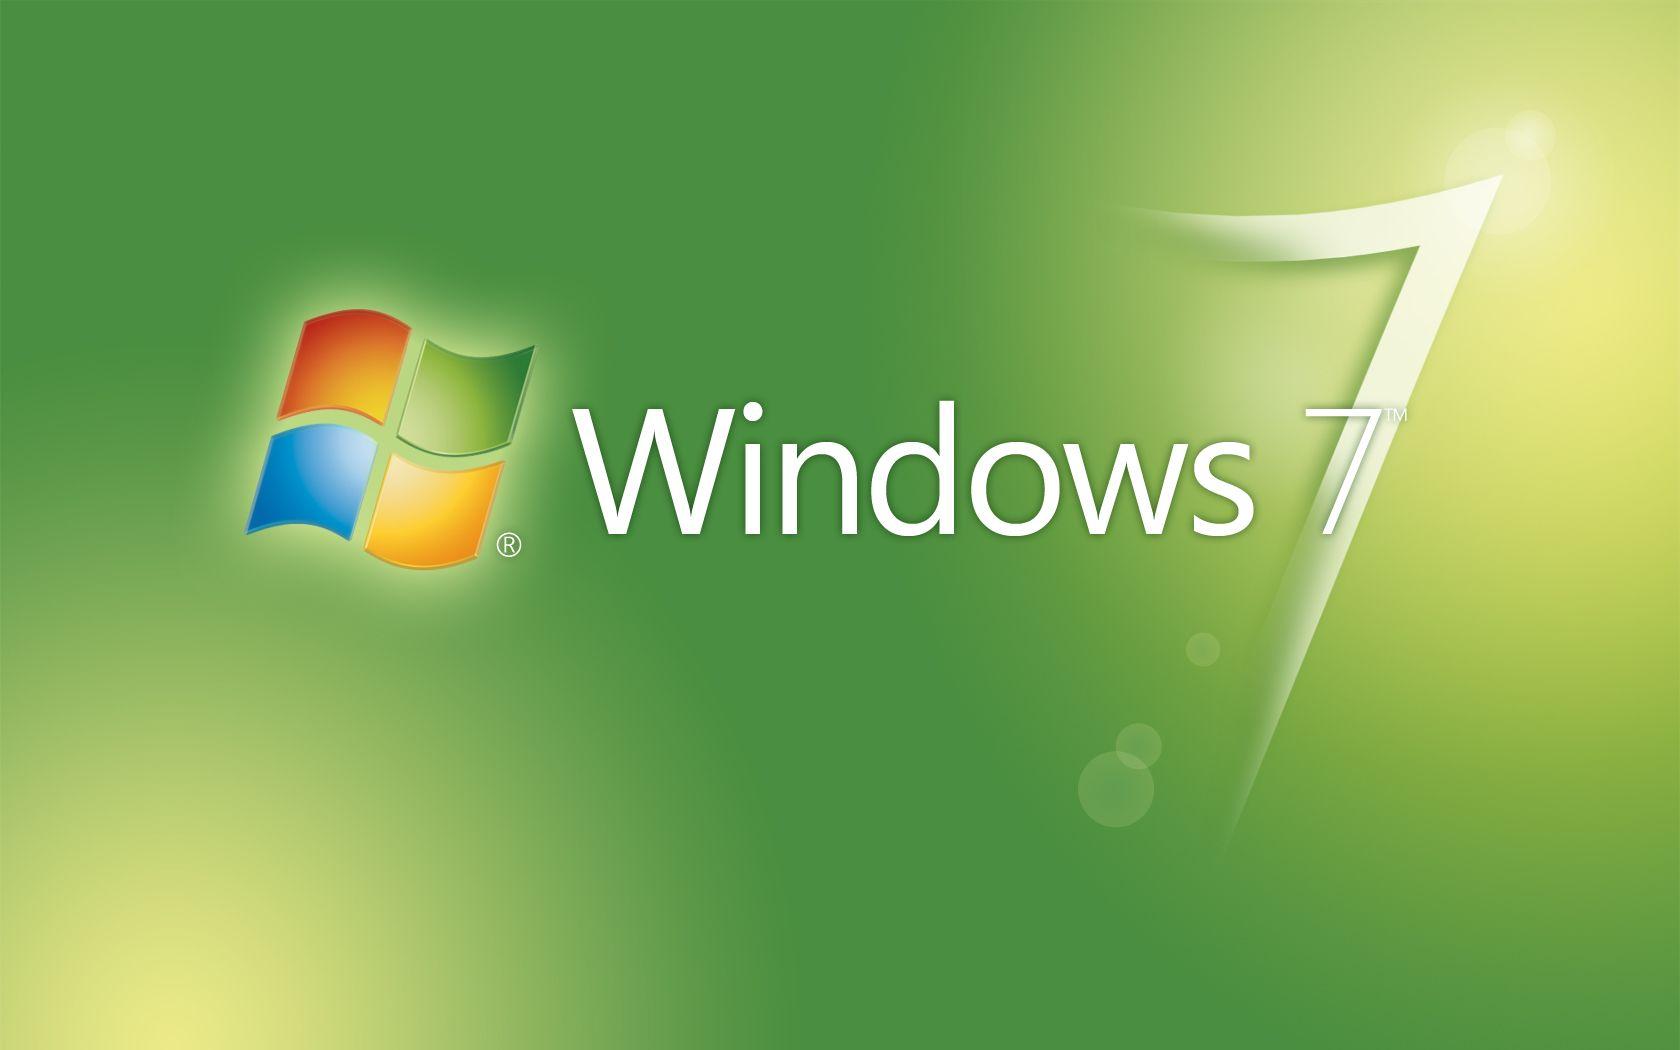 Hình nền logo Windows 7 màu xanh lục 1680x1050: Hình nền độ phân giải cao, độ phân giải cao